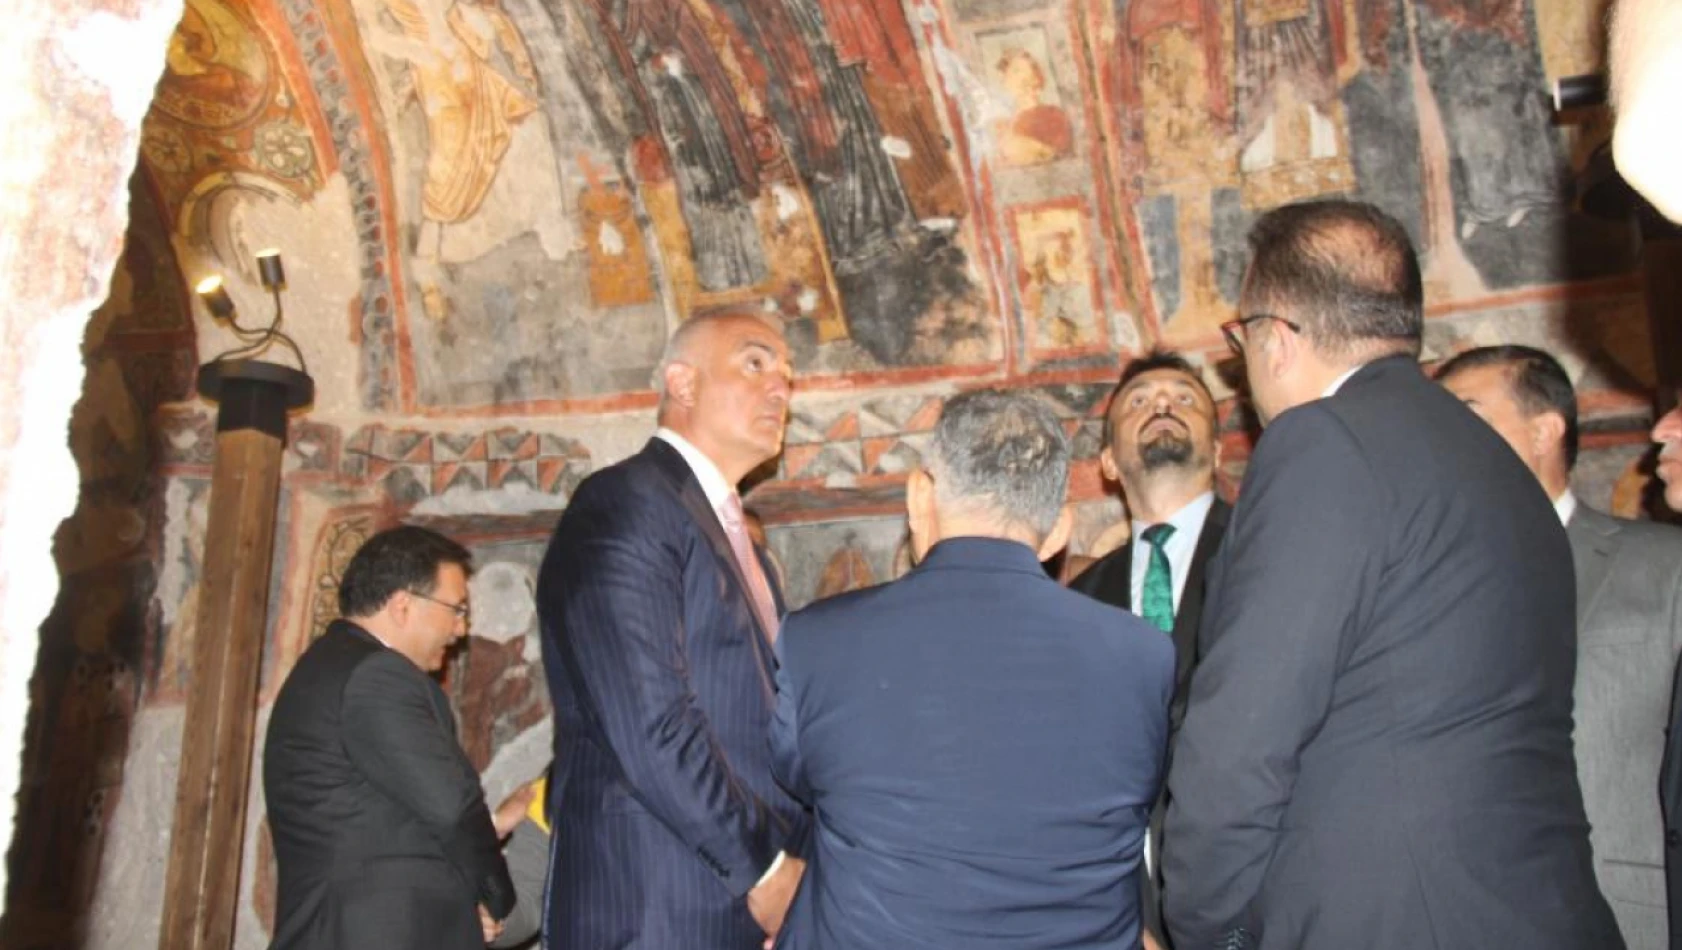 Kültür ve Turizm Bakanı Kapadokya'nın Kalbini Ziyaret Etti